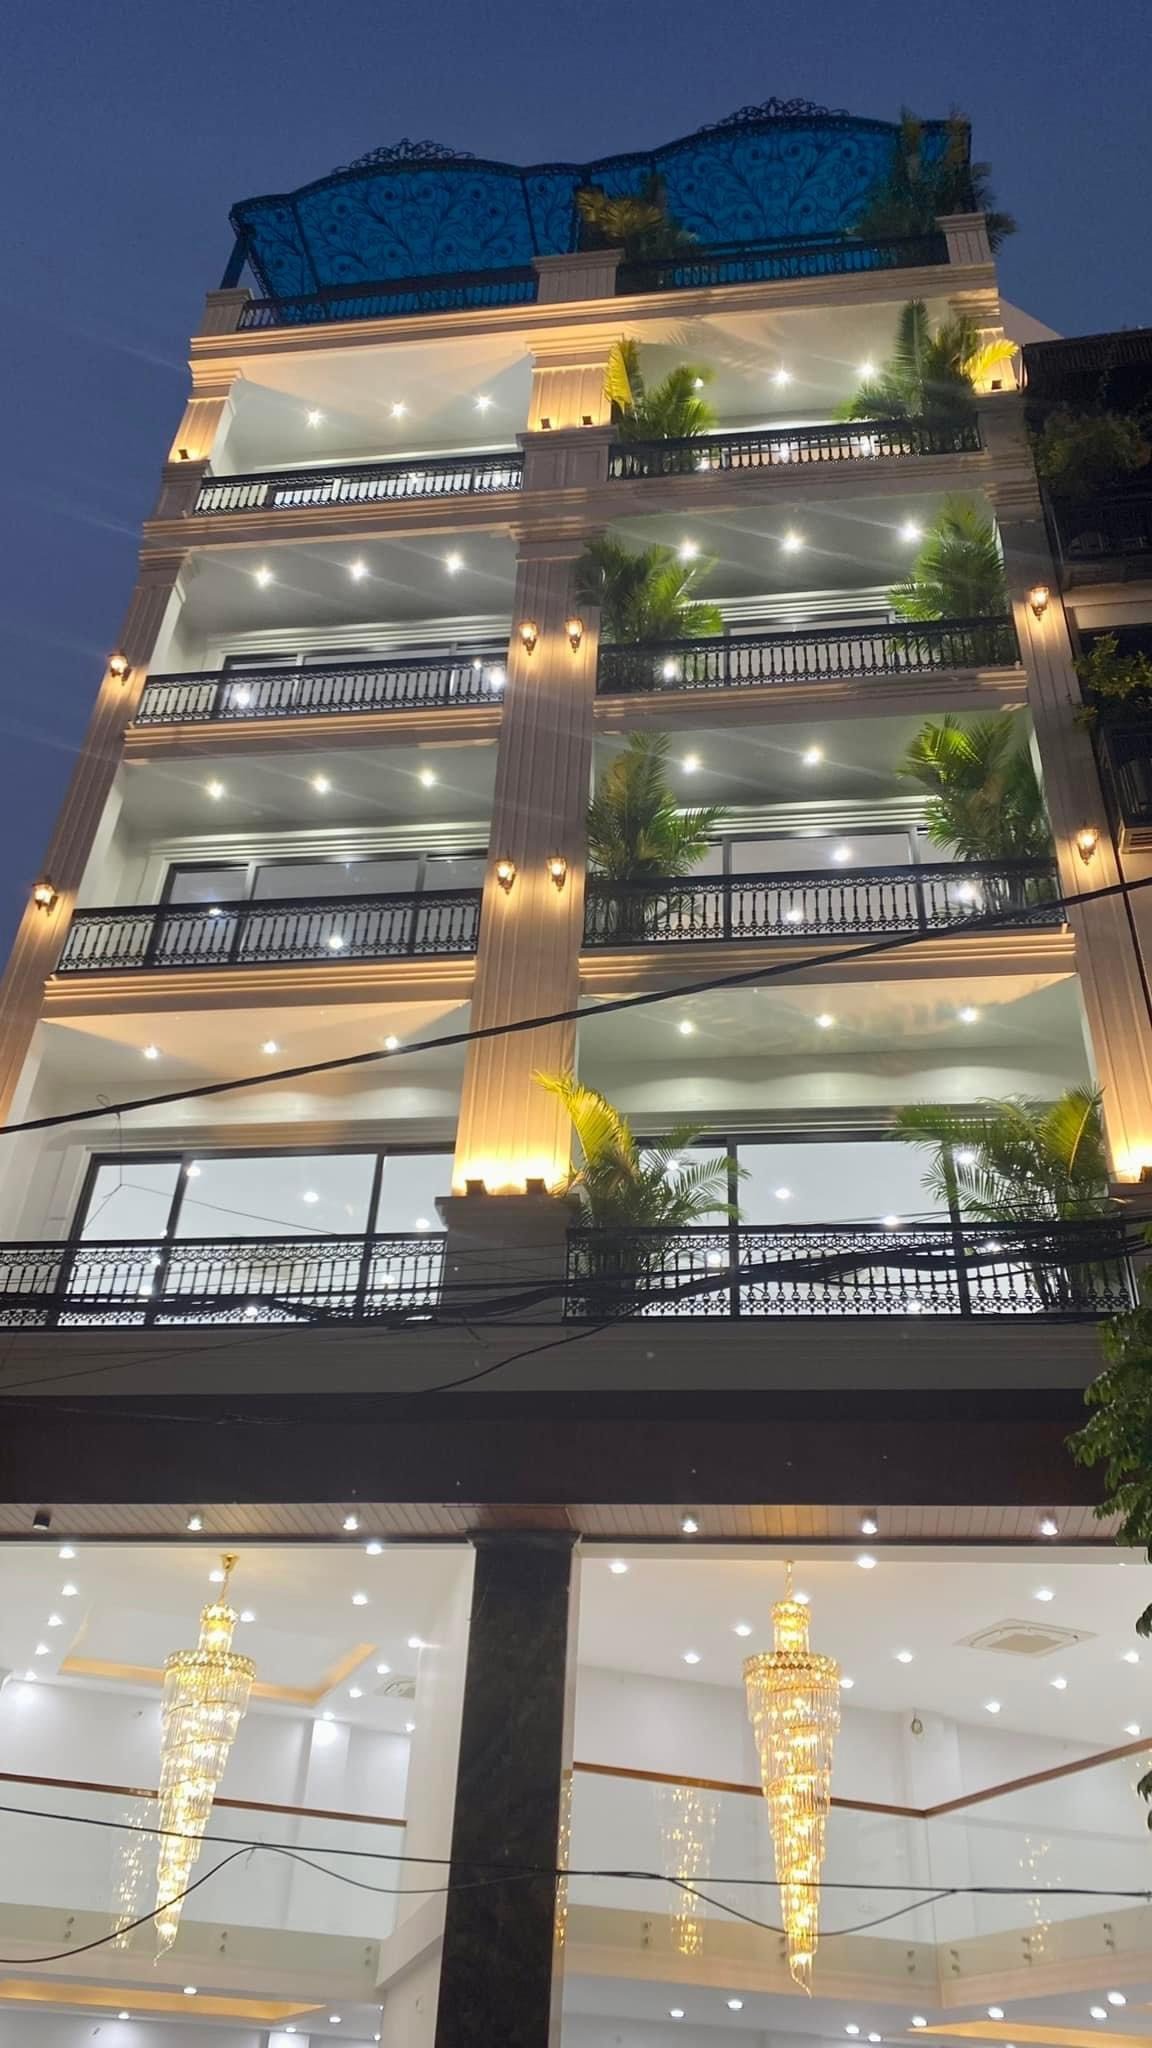 Cho thuê nhà nguyên căn 7 tầng, thang máy mặt ngõ phố Minh Khai làm văn phòng, Thẩm mỹ, lớp học, phòng khám